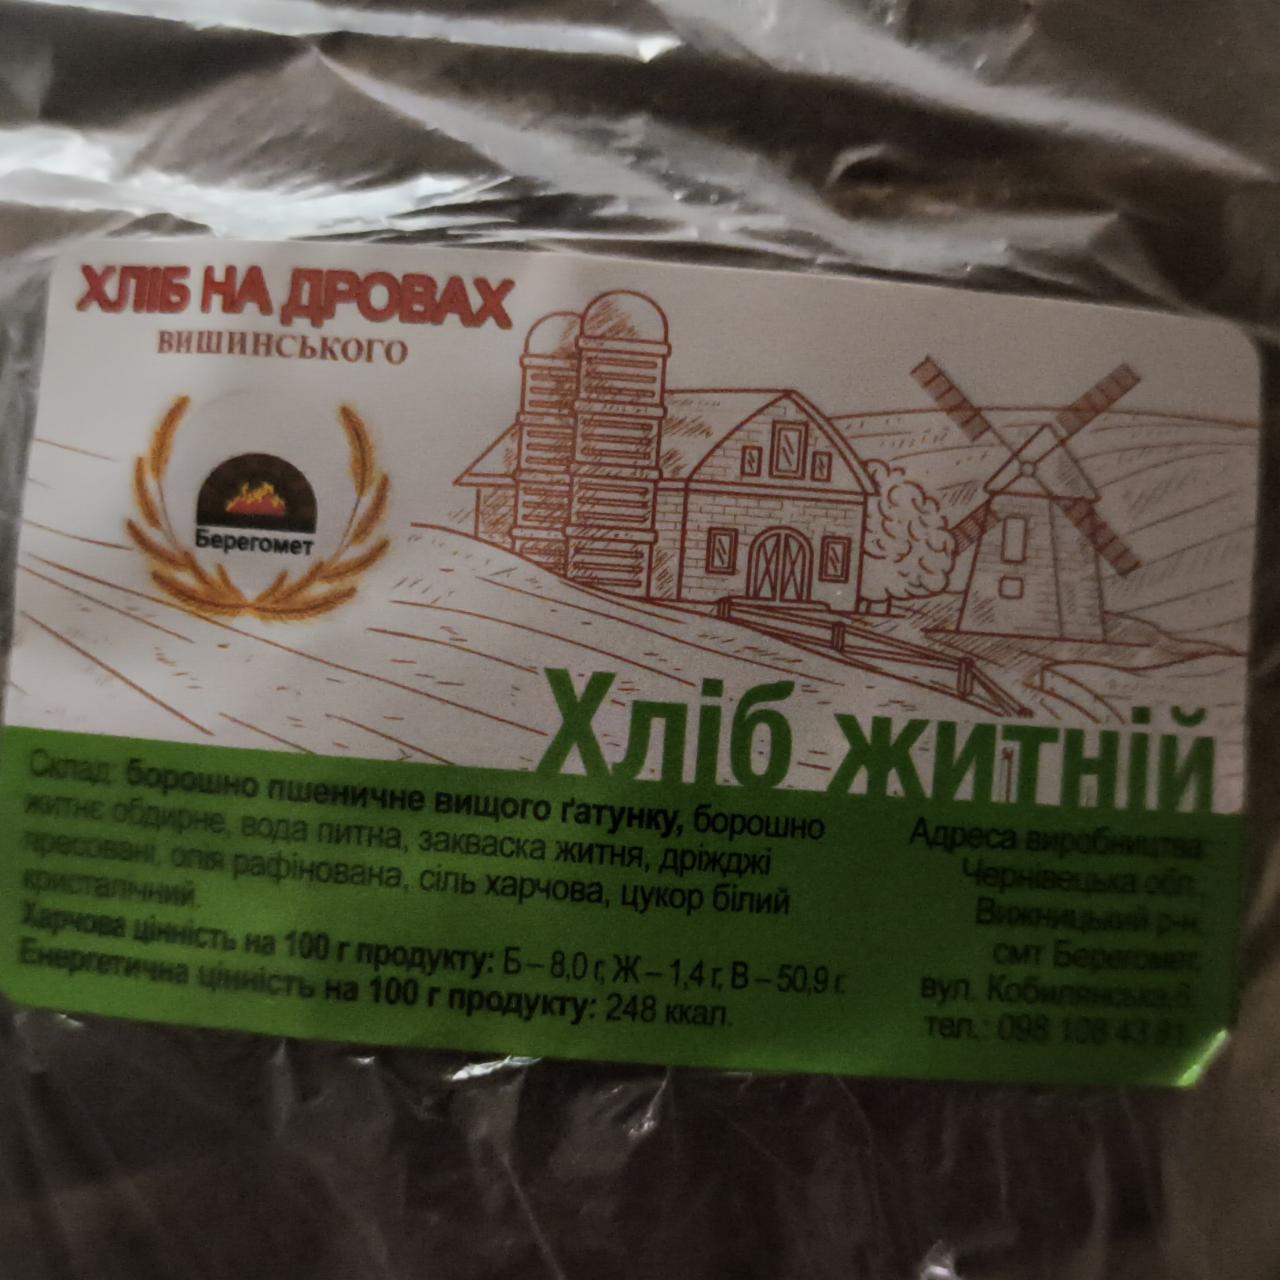 Фото - Хлеб ржаной на дровах Вишинського Берегомет